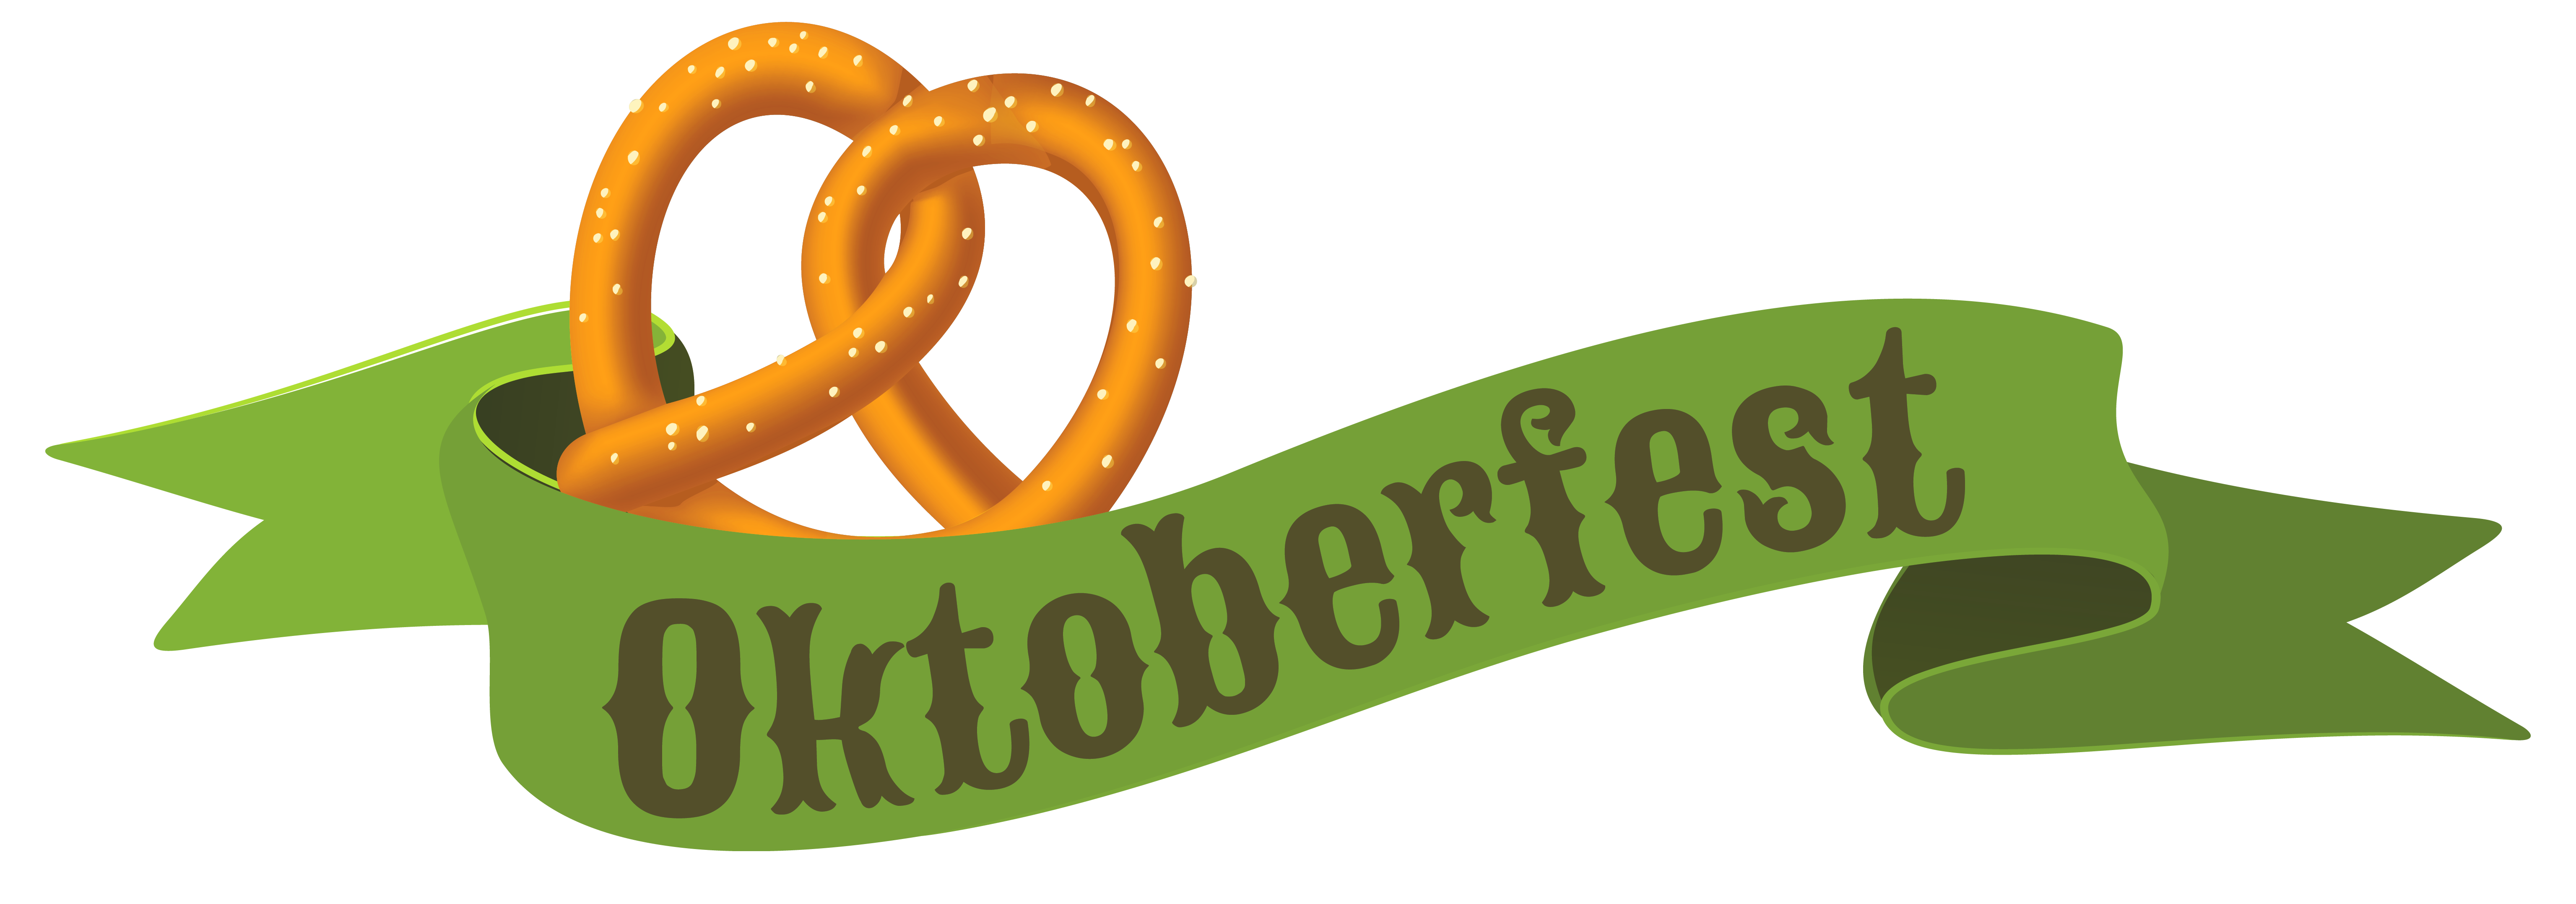 Oktoberfest Cuisine German Beer Green Banner Clipart